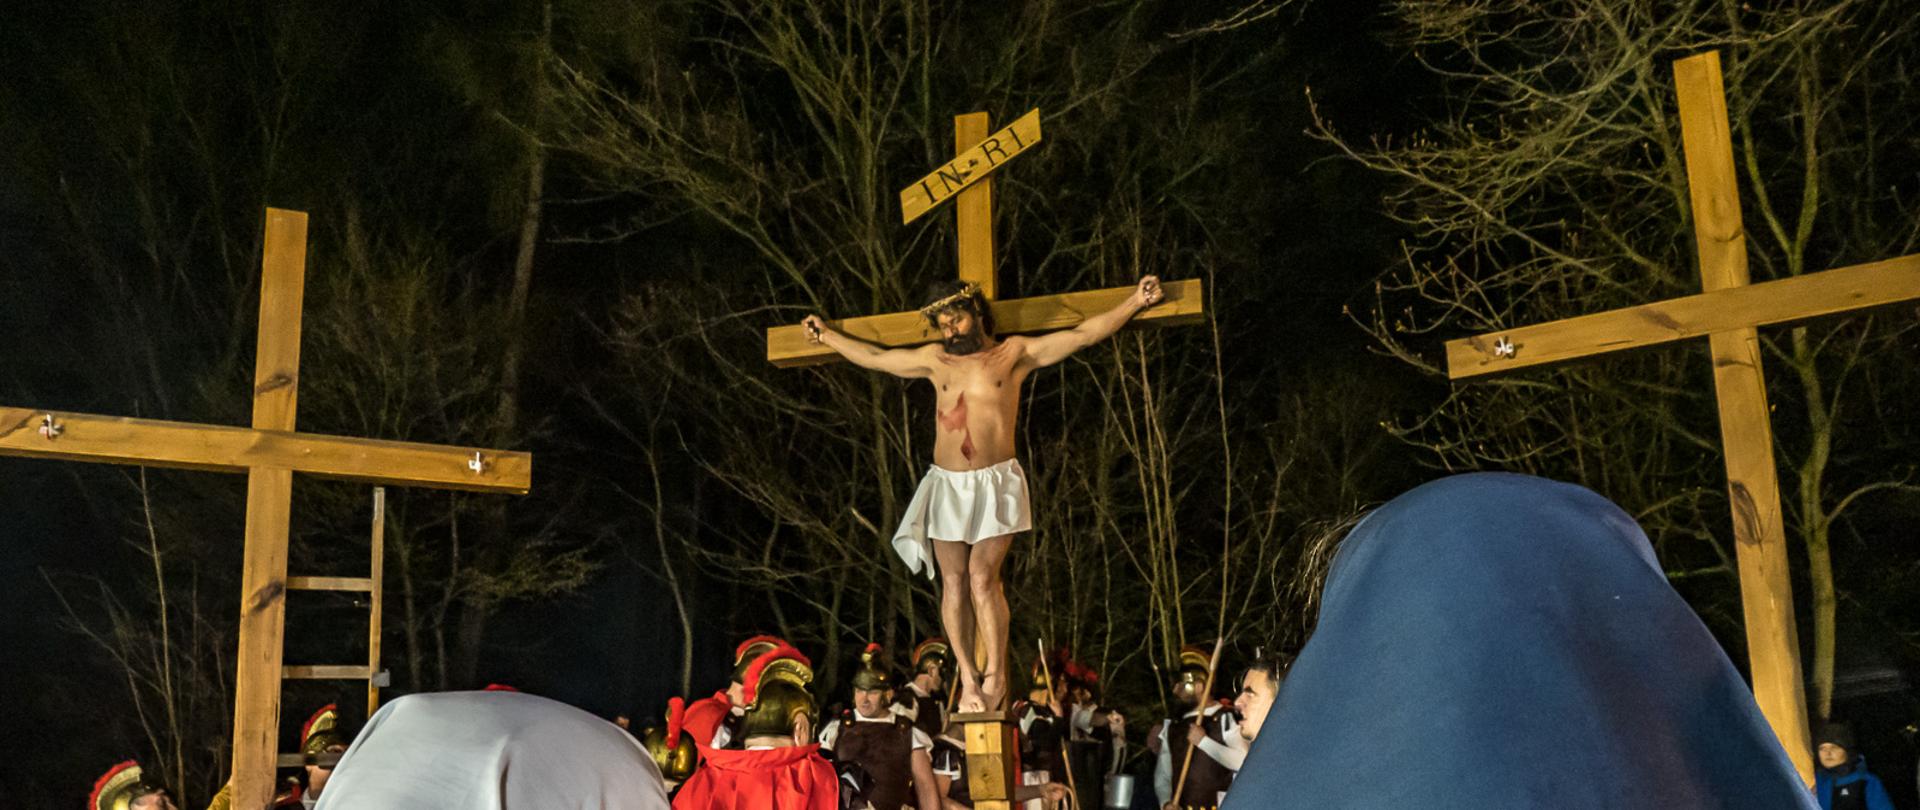 Zdjęcie przedstawia trzy, ustawione obok siebie krzyże, otoczone przez uczestników misterium i aktorów w strojach rzymskich legionistów. Na stojącym w centrum krzyża znajduje się aktor odgrywający Chrystusa.